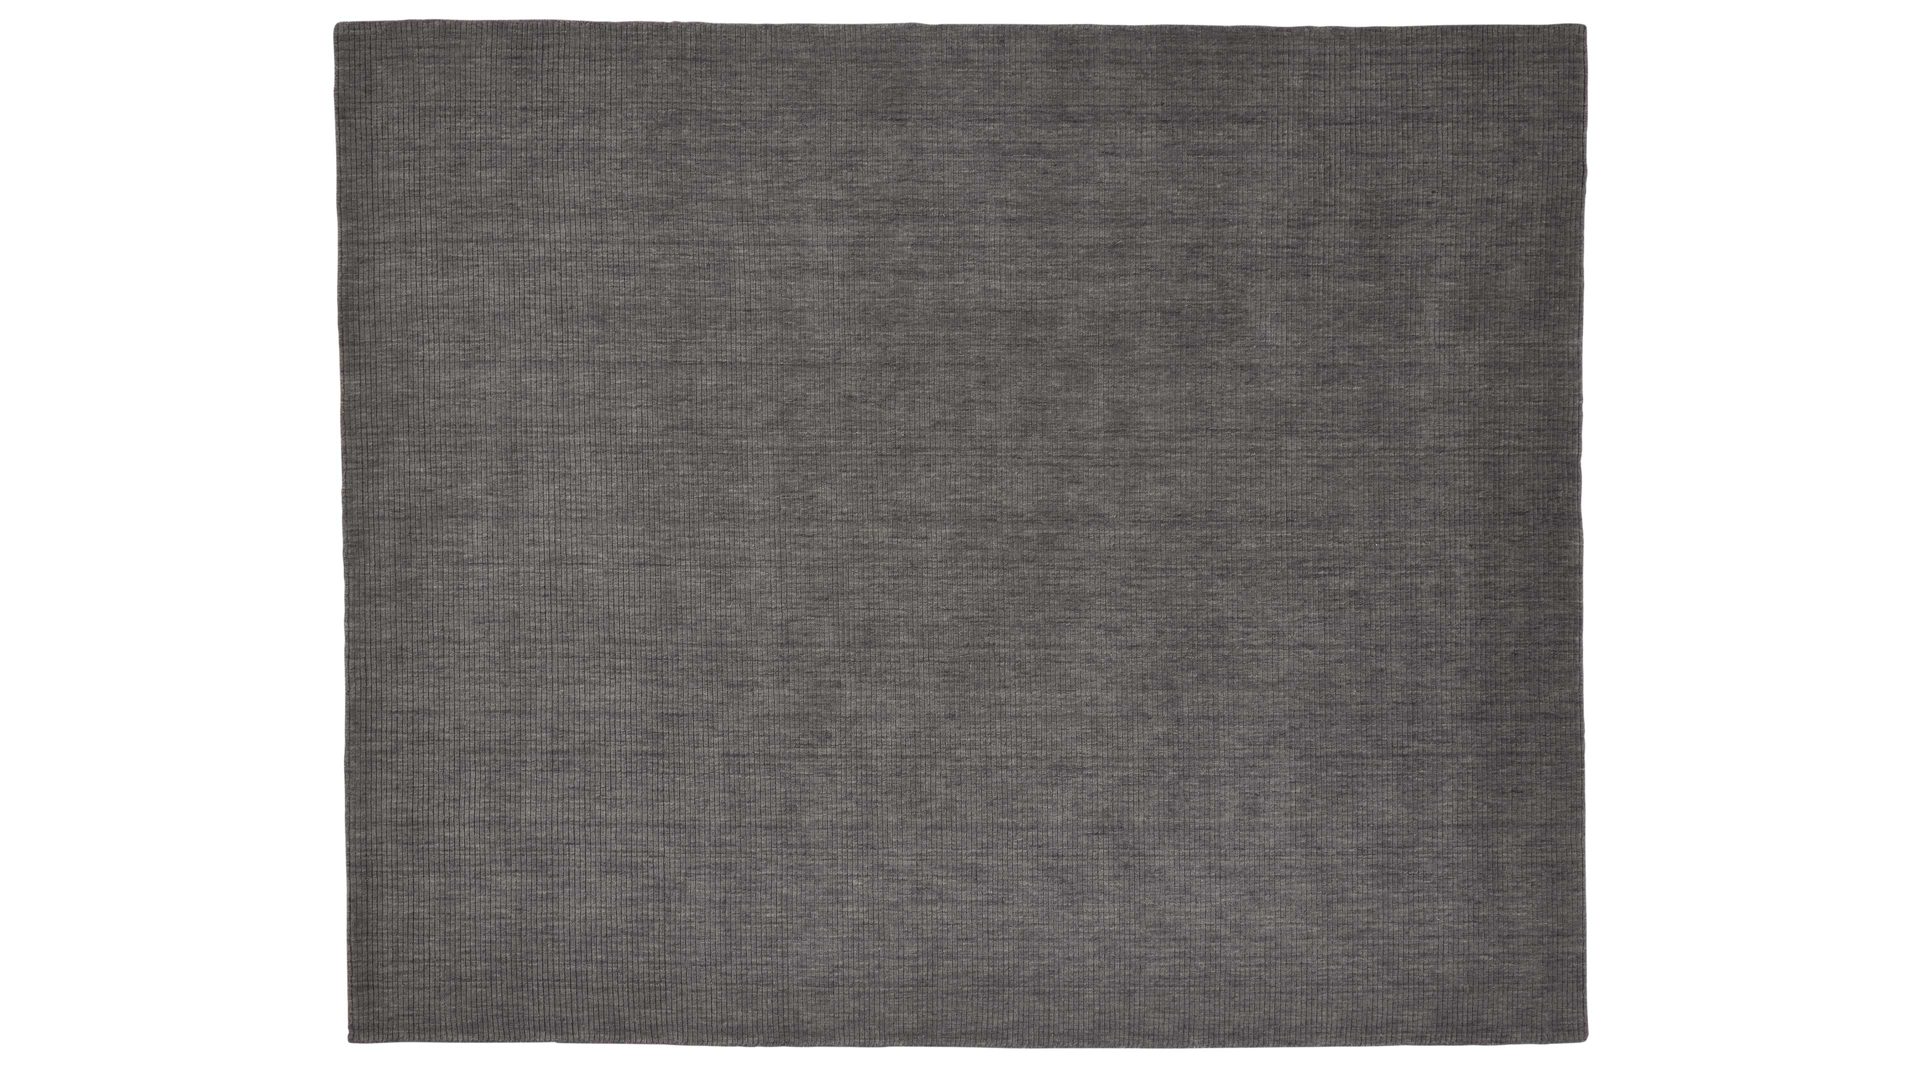 Handwebteppich Interliving aus Naturfaser in Grau Interliving Teppich Serie R-8120 Grau - ca. 170 x 240 cm